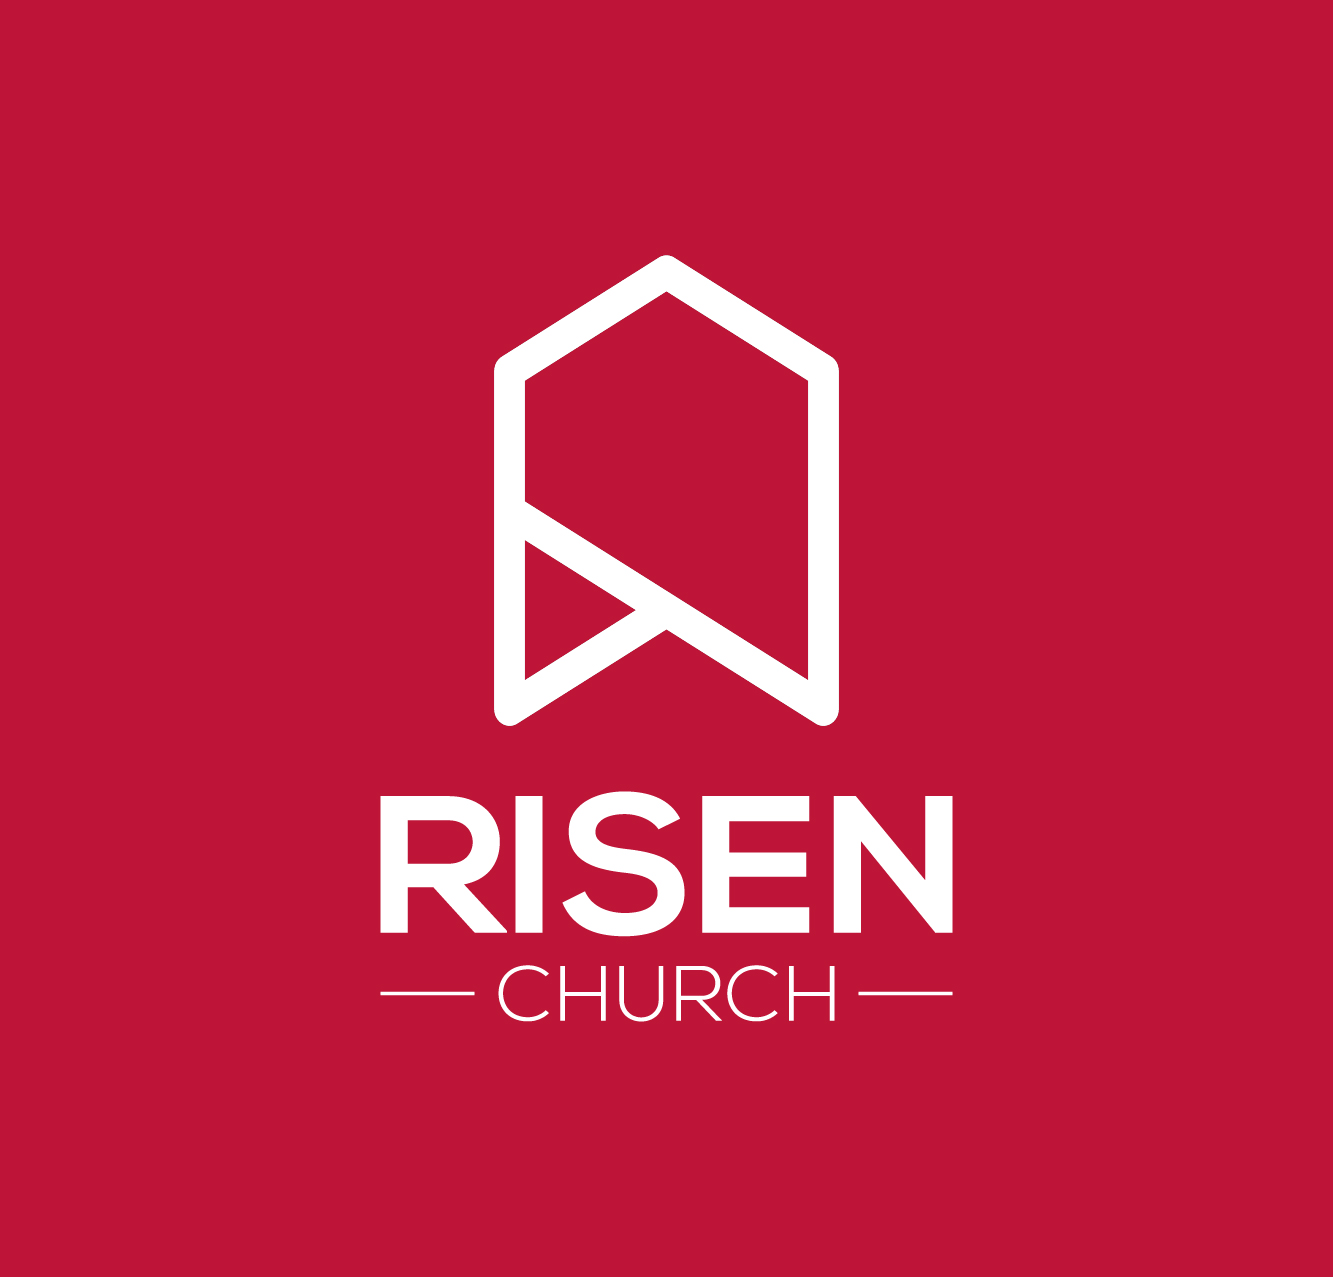 Risen Church